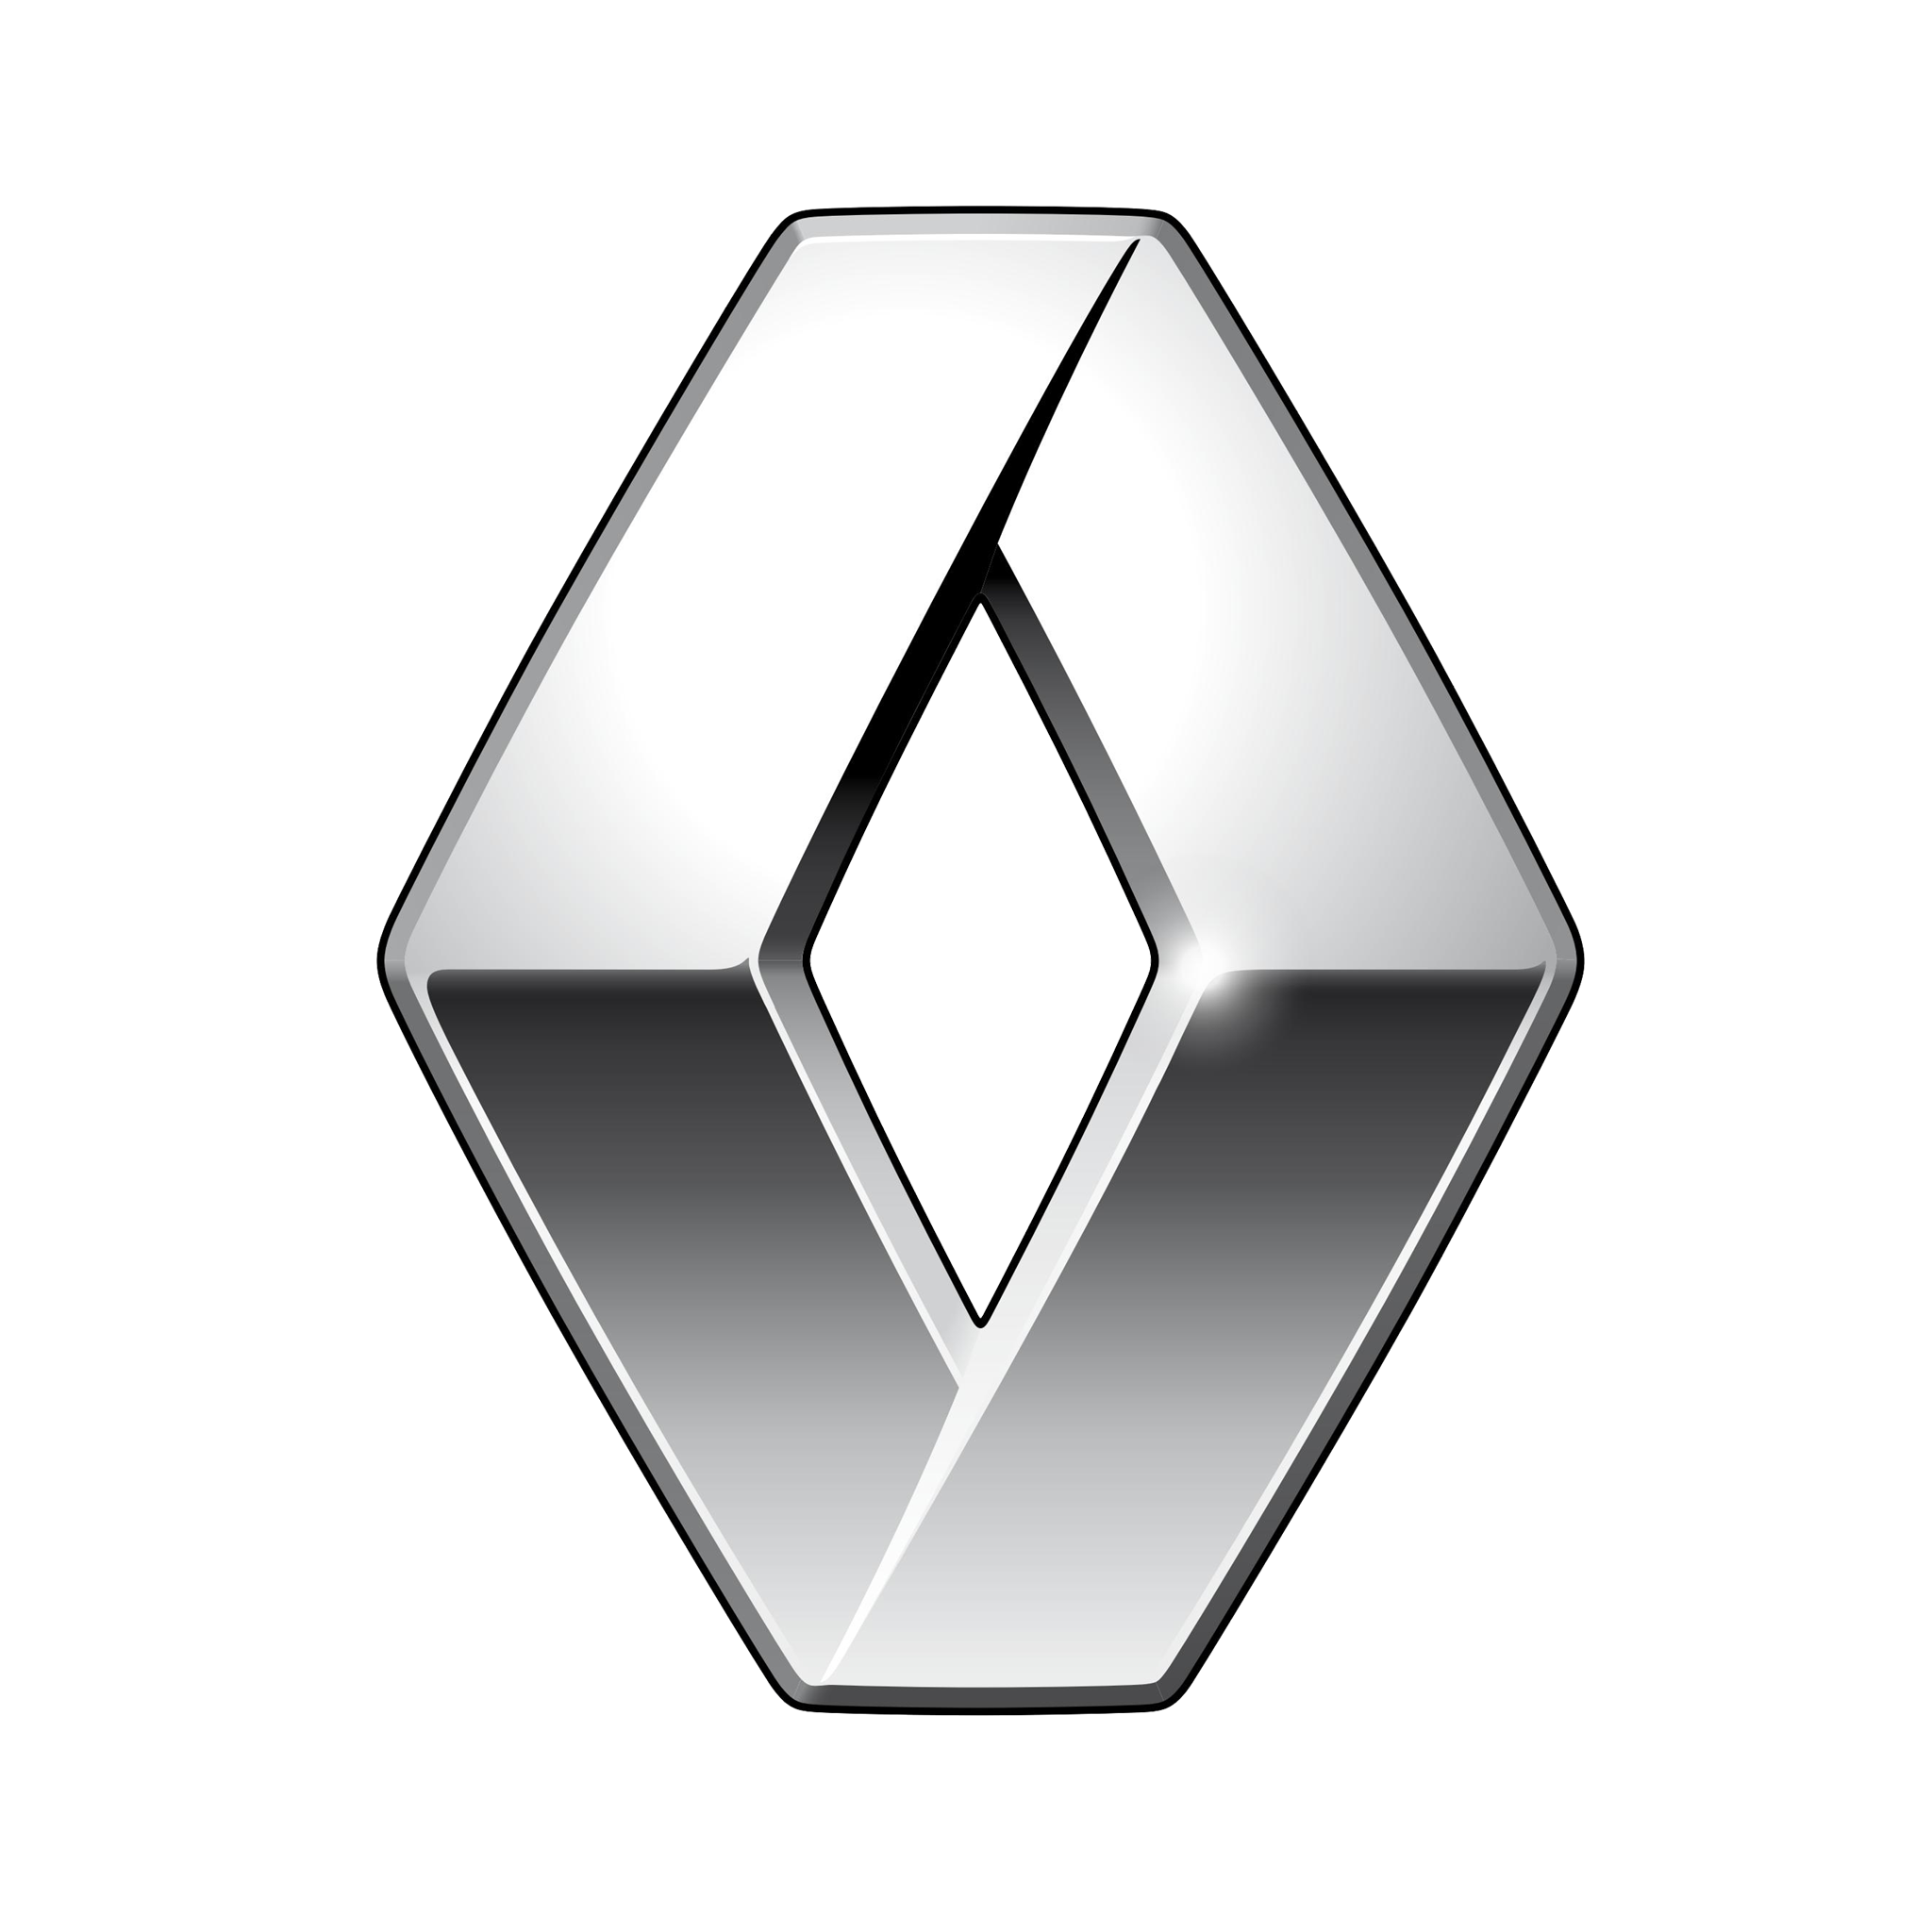 Renault logo, slogan